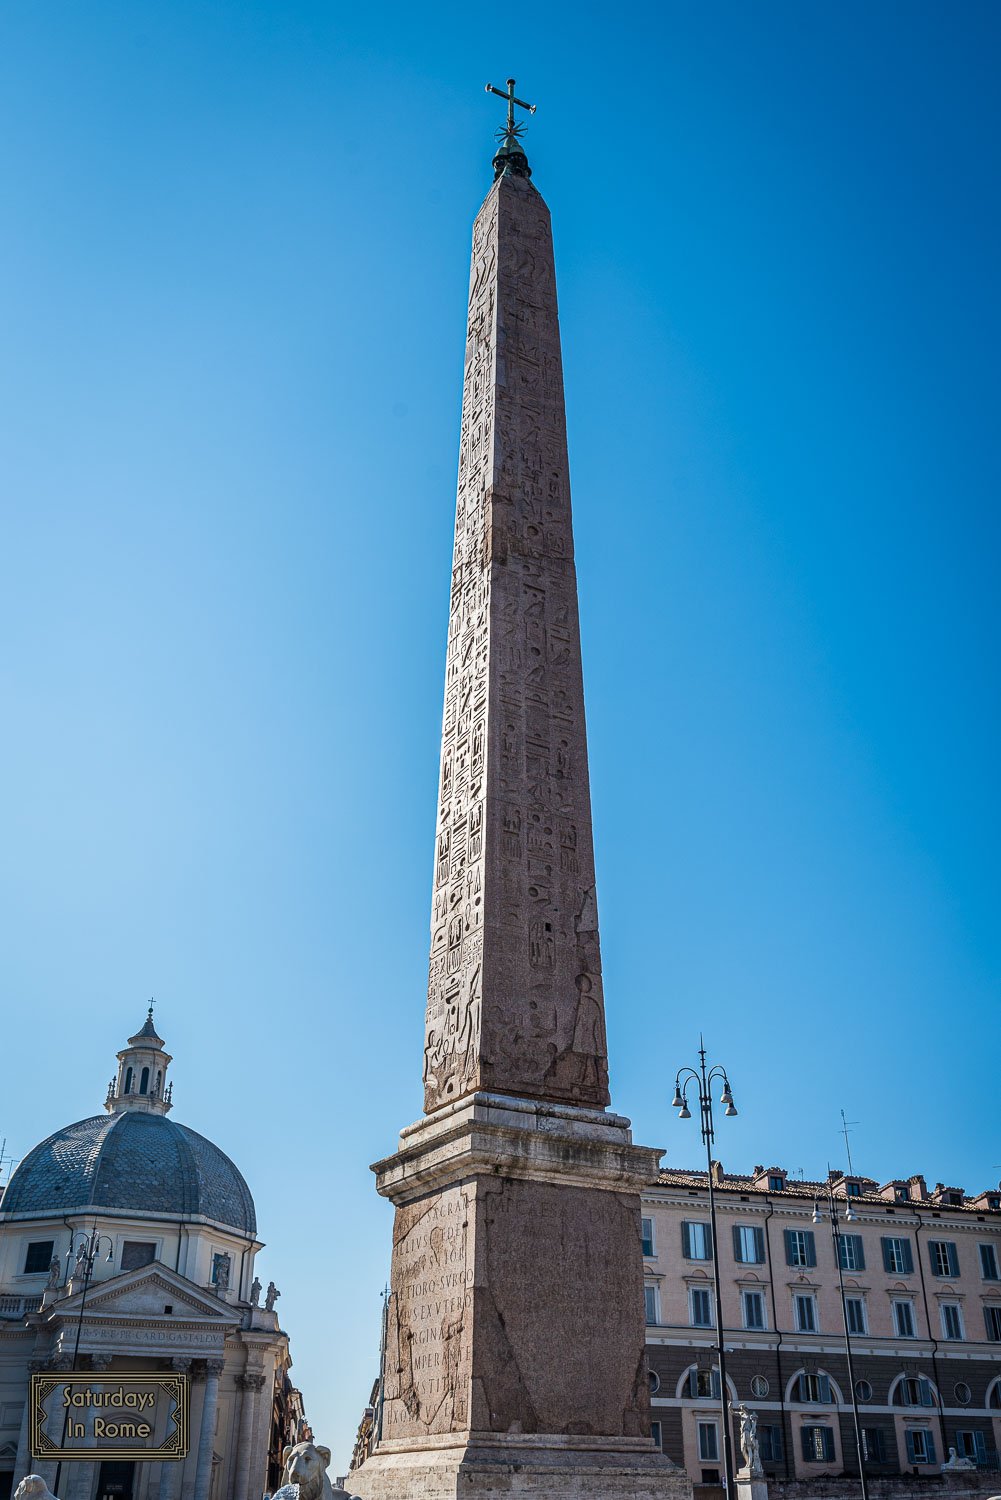 egyptian obelisks in rome - Piazza del Popolo Obelisk